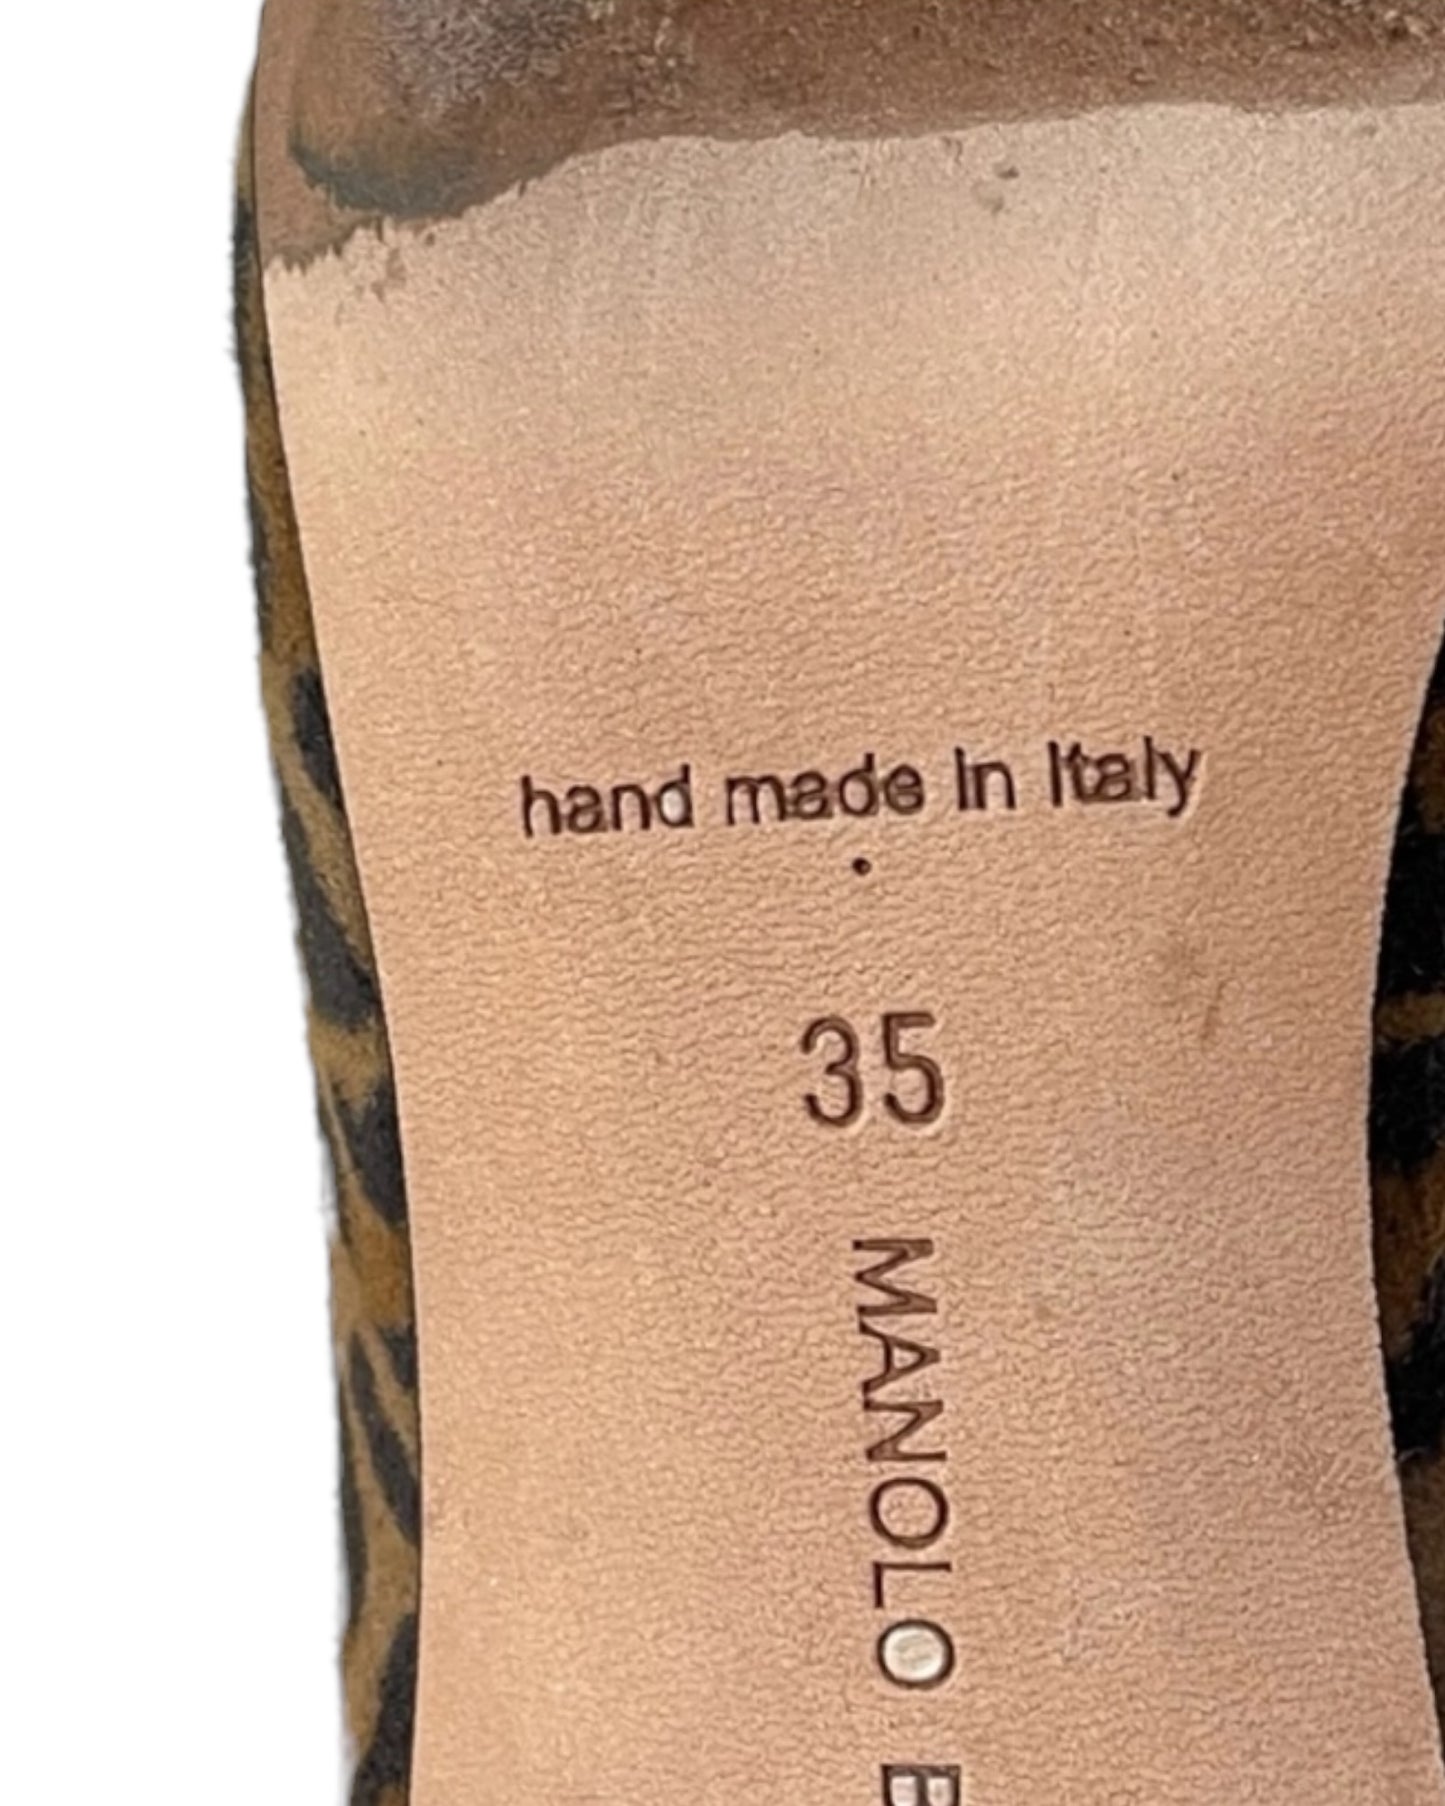 Vintage Manolo Blahnik leopard print heels